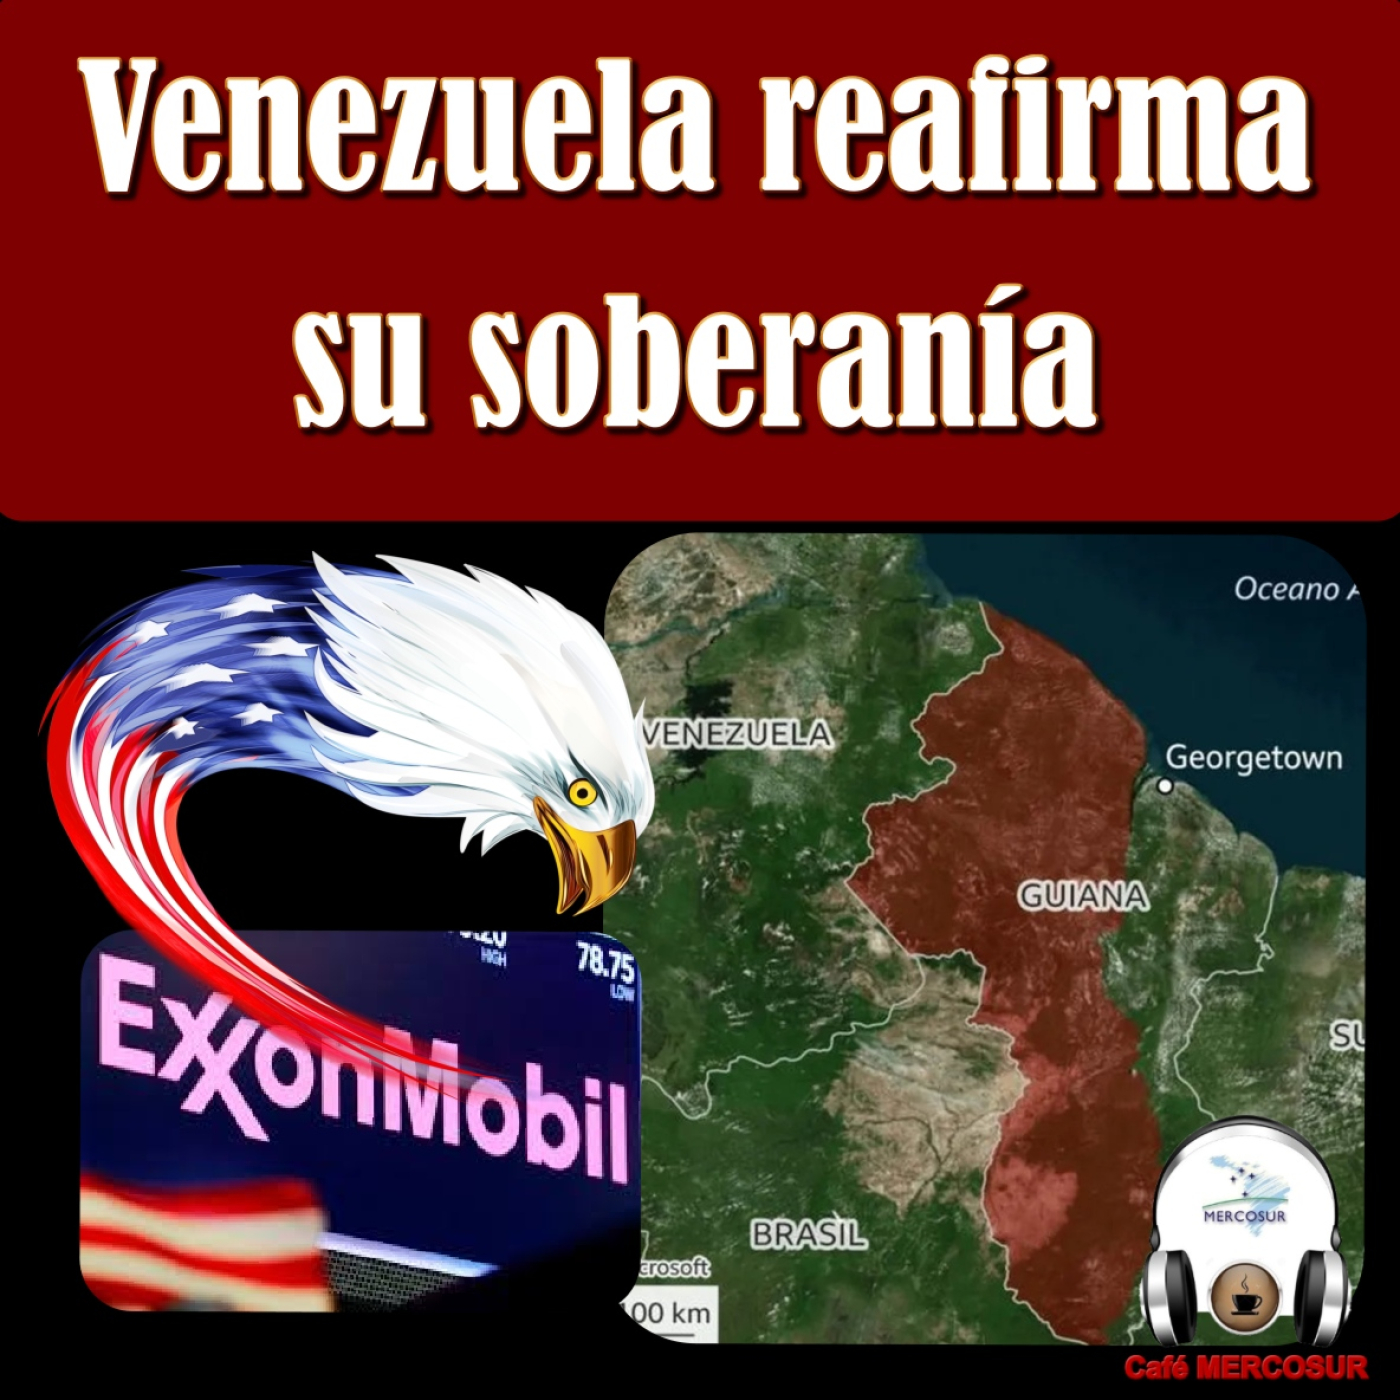 Venezuela plebiscita su soberanía